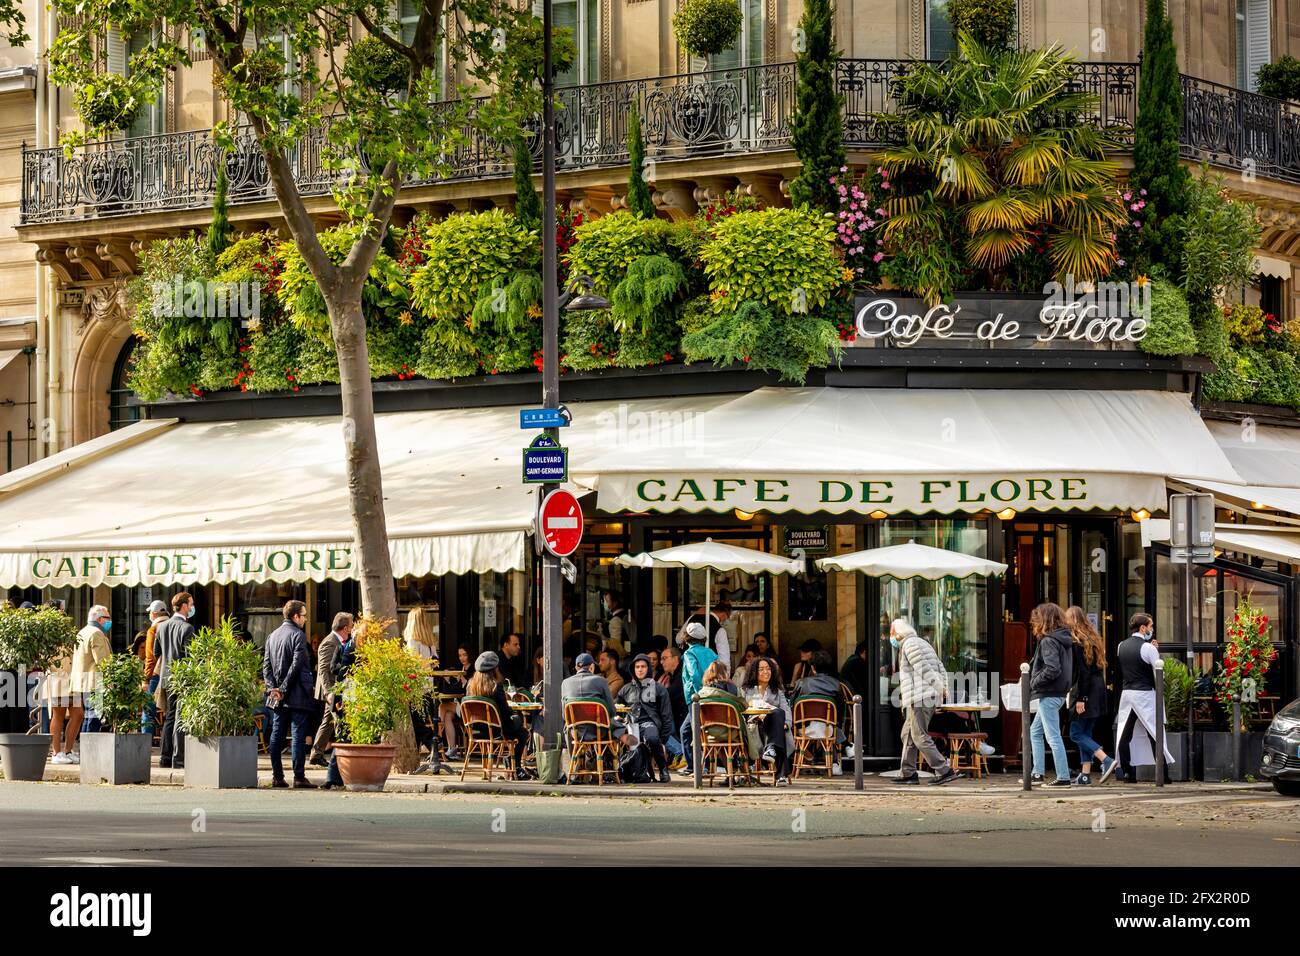 París, Francia - 19 de mayo de 2021: Día después del cierre debido al covid-19 en un famoso café parisino. 2 camareros llevan máscaras quirúrgicas Foto de stock